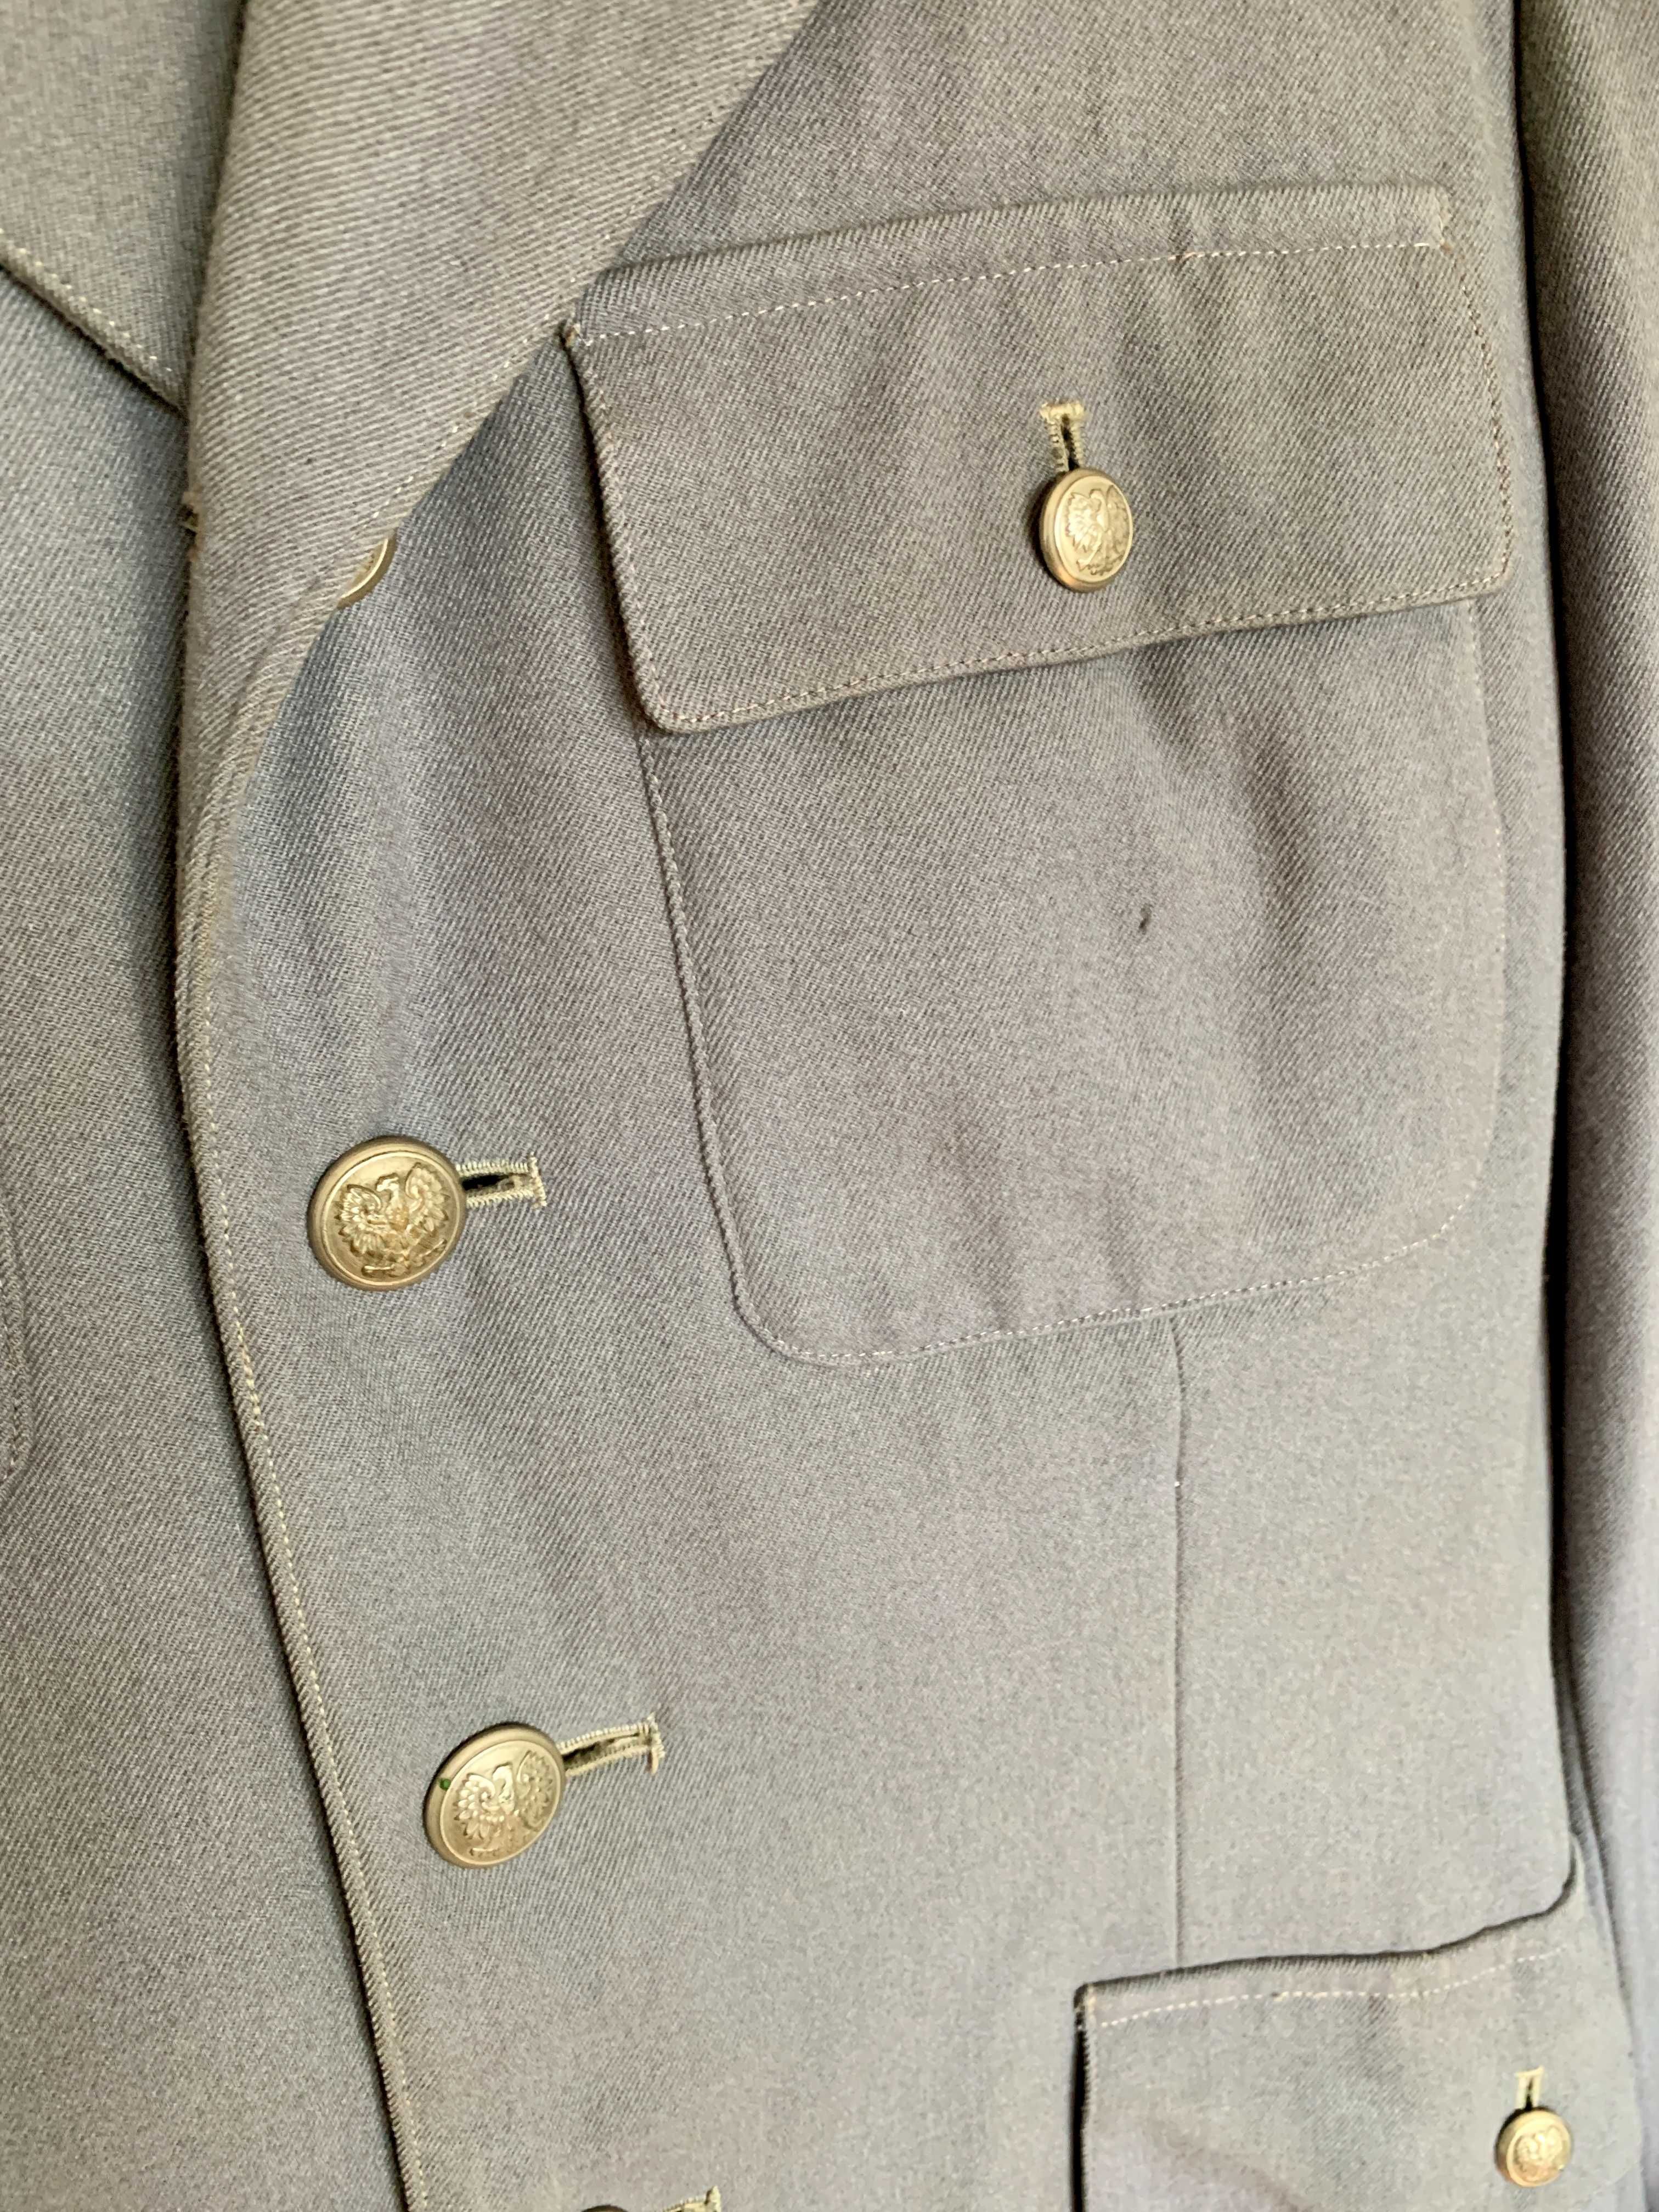 Mundur Milicyjny Bluza MO Kwiecień 1959 roku